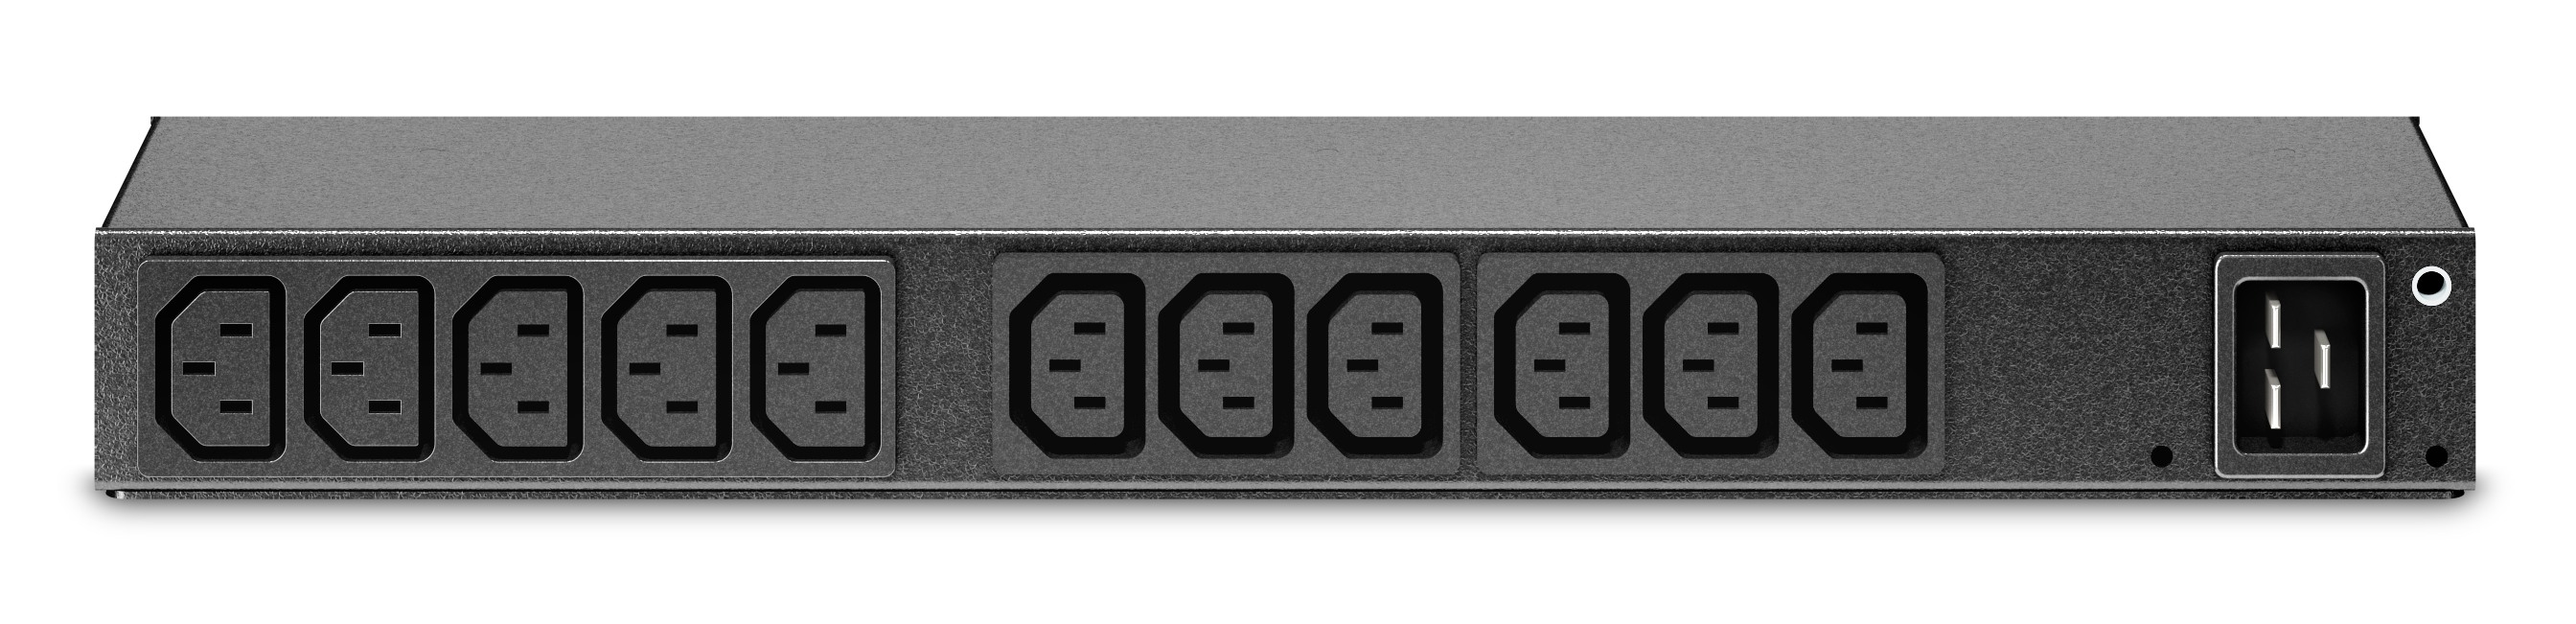 APC Basic Rack PDU AP6020A - Stromverteilungseinheit (Rack - einbaufähig)